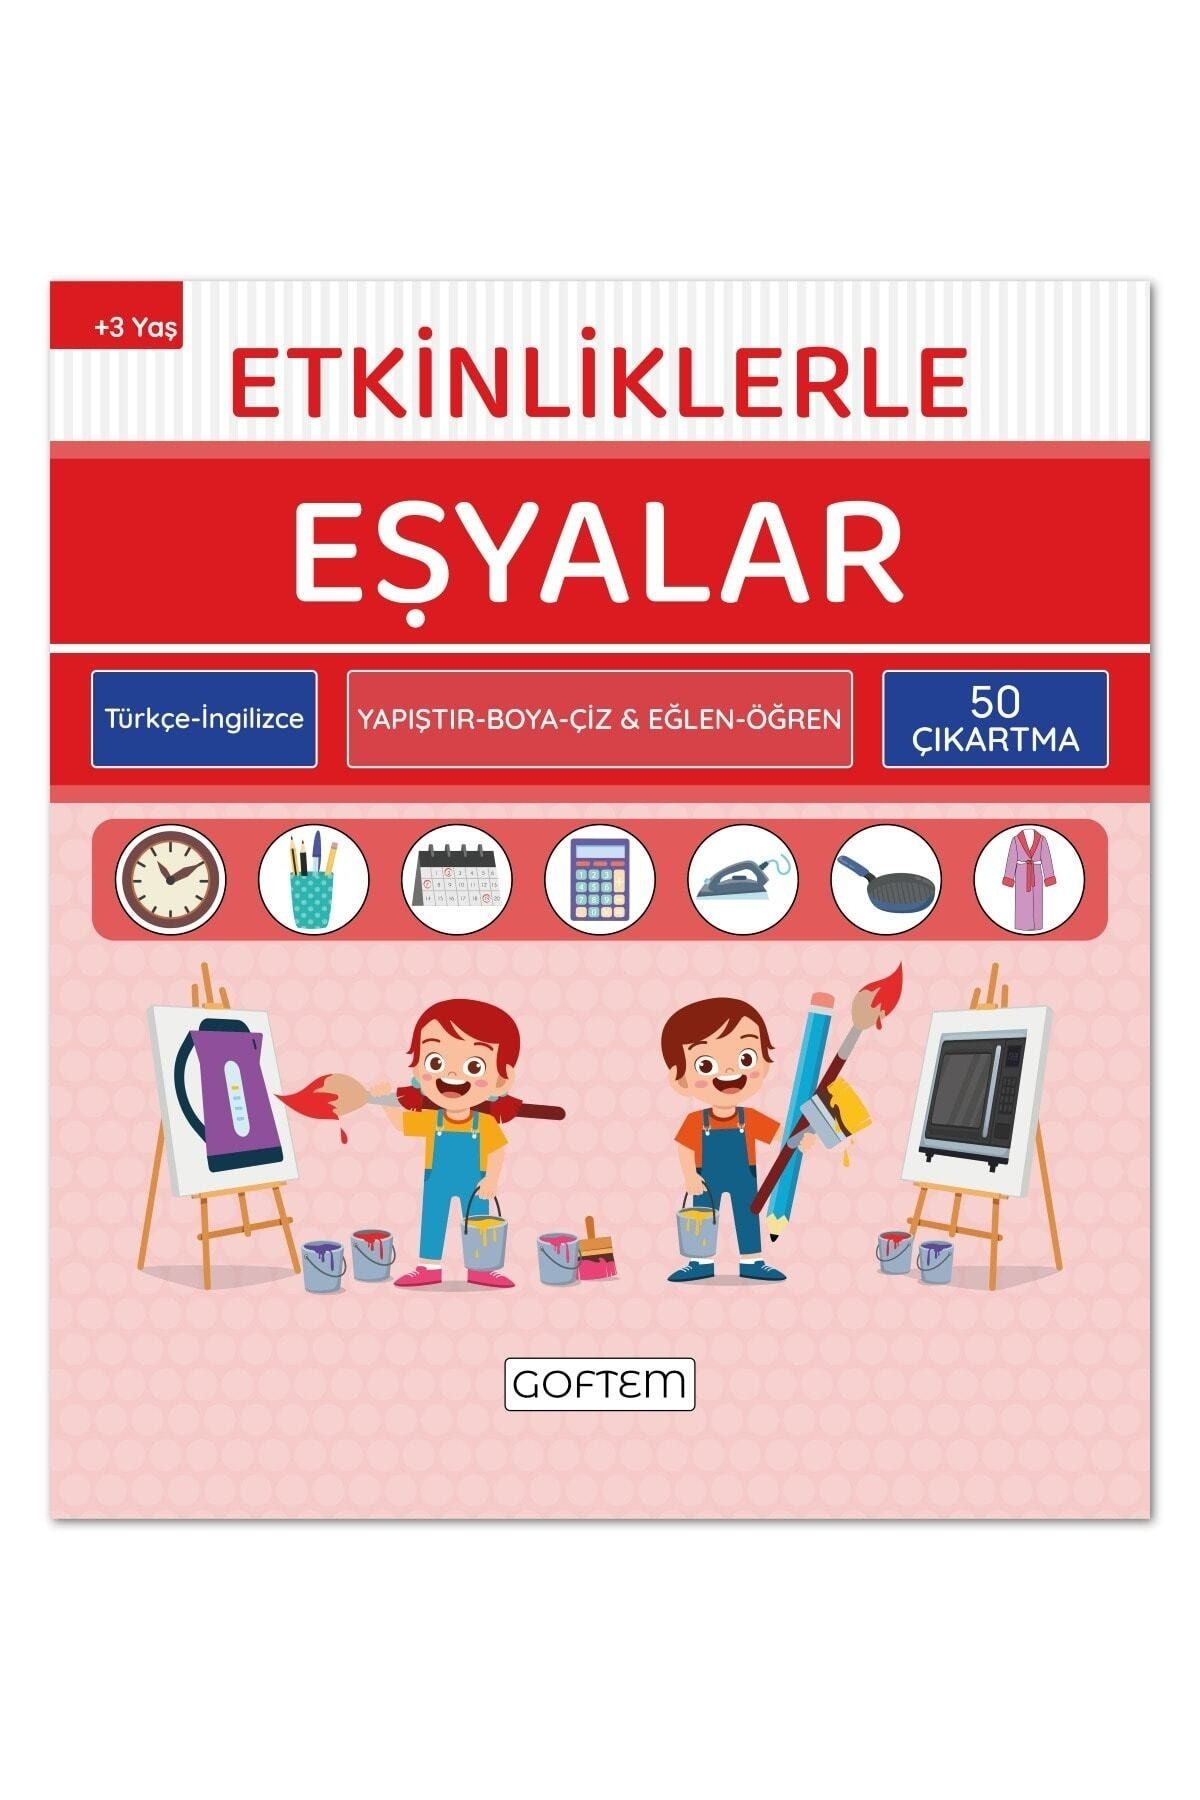 Etkinliklerle Eşyalar - Türkçe Ingilizce - 50 Çıkartma - 24 Sayfa Eğitici Aktivite Kitabı